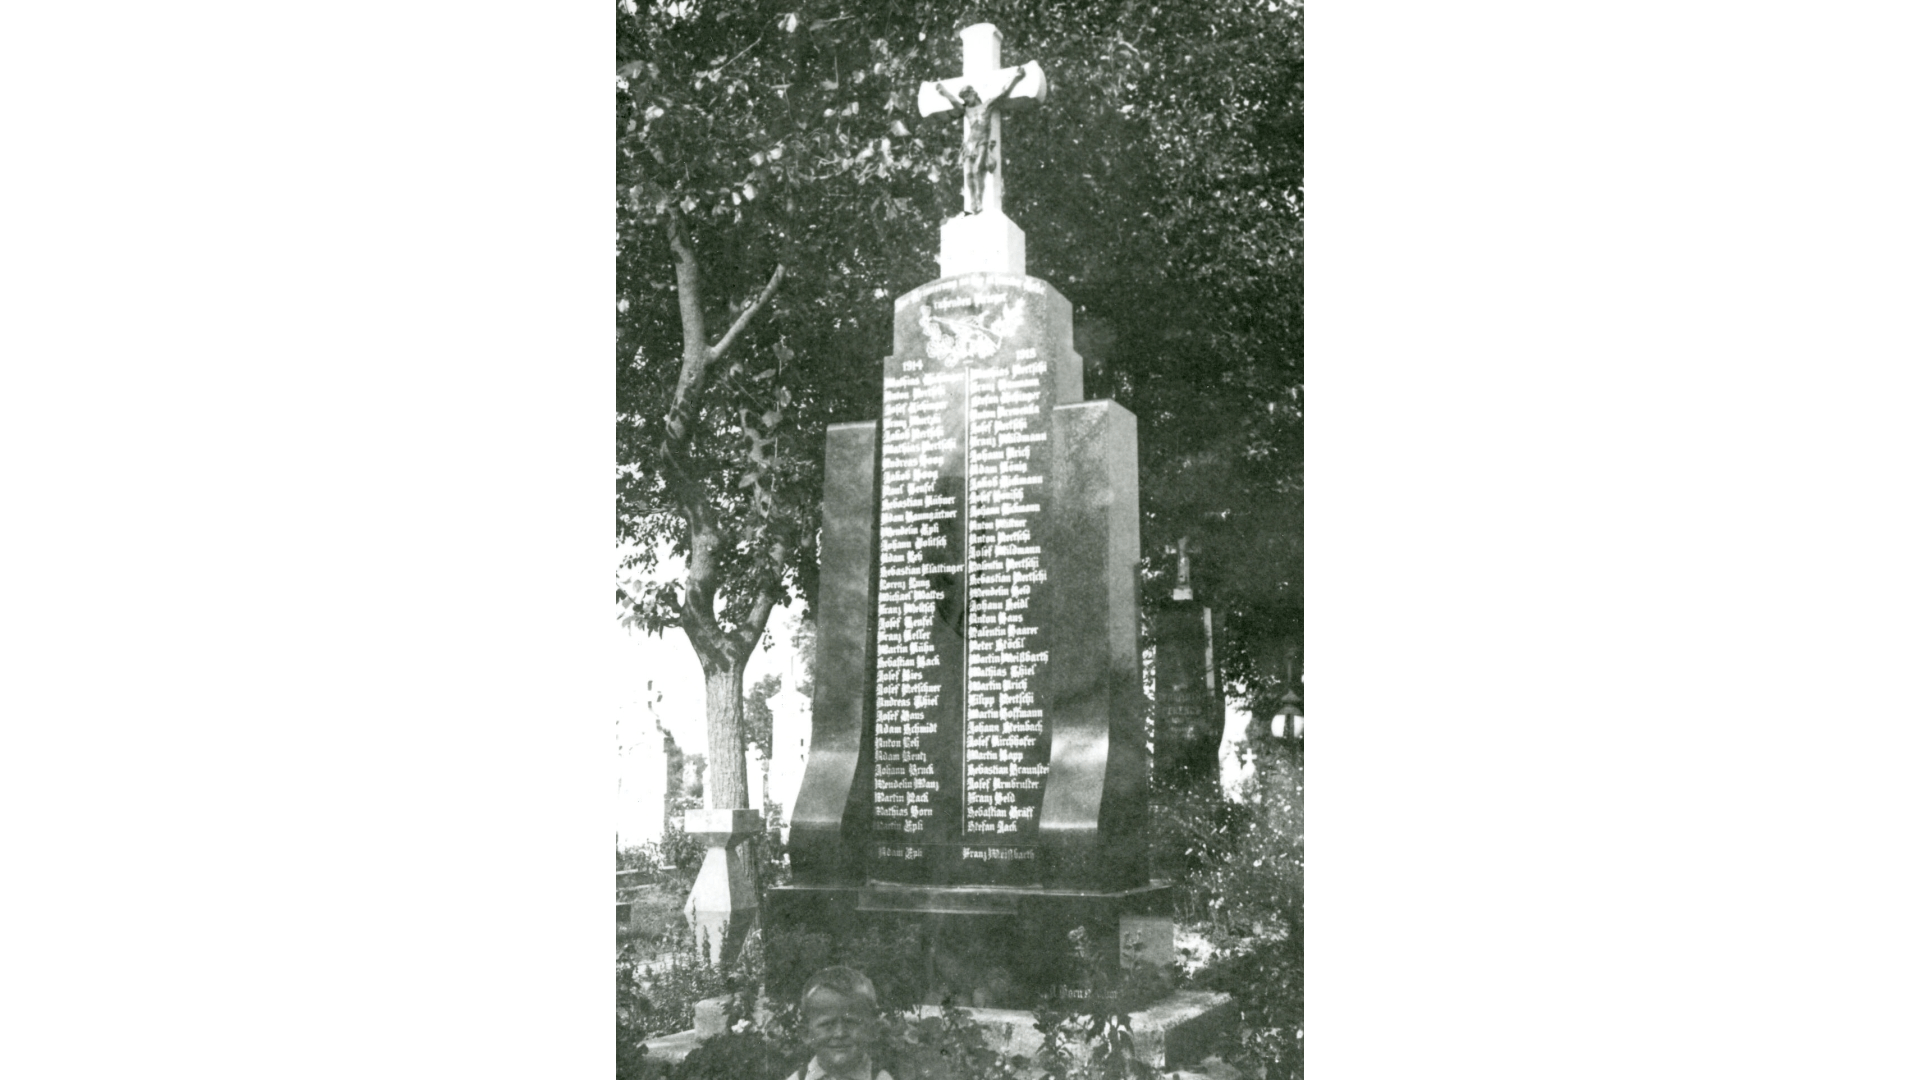 Das Denkmal für die 202 Gefallenen des Ersten Weltkrieges. Foto: Archiv Arme Schulschwestern